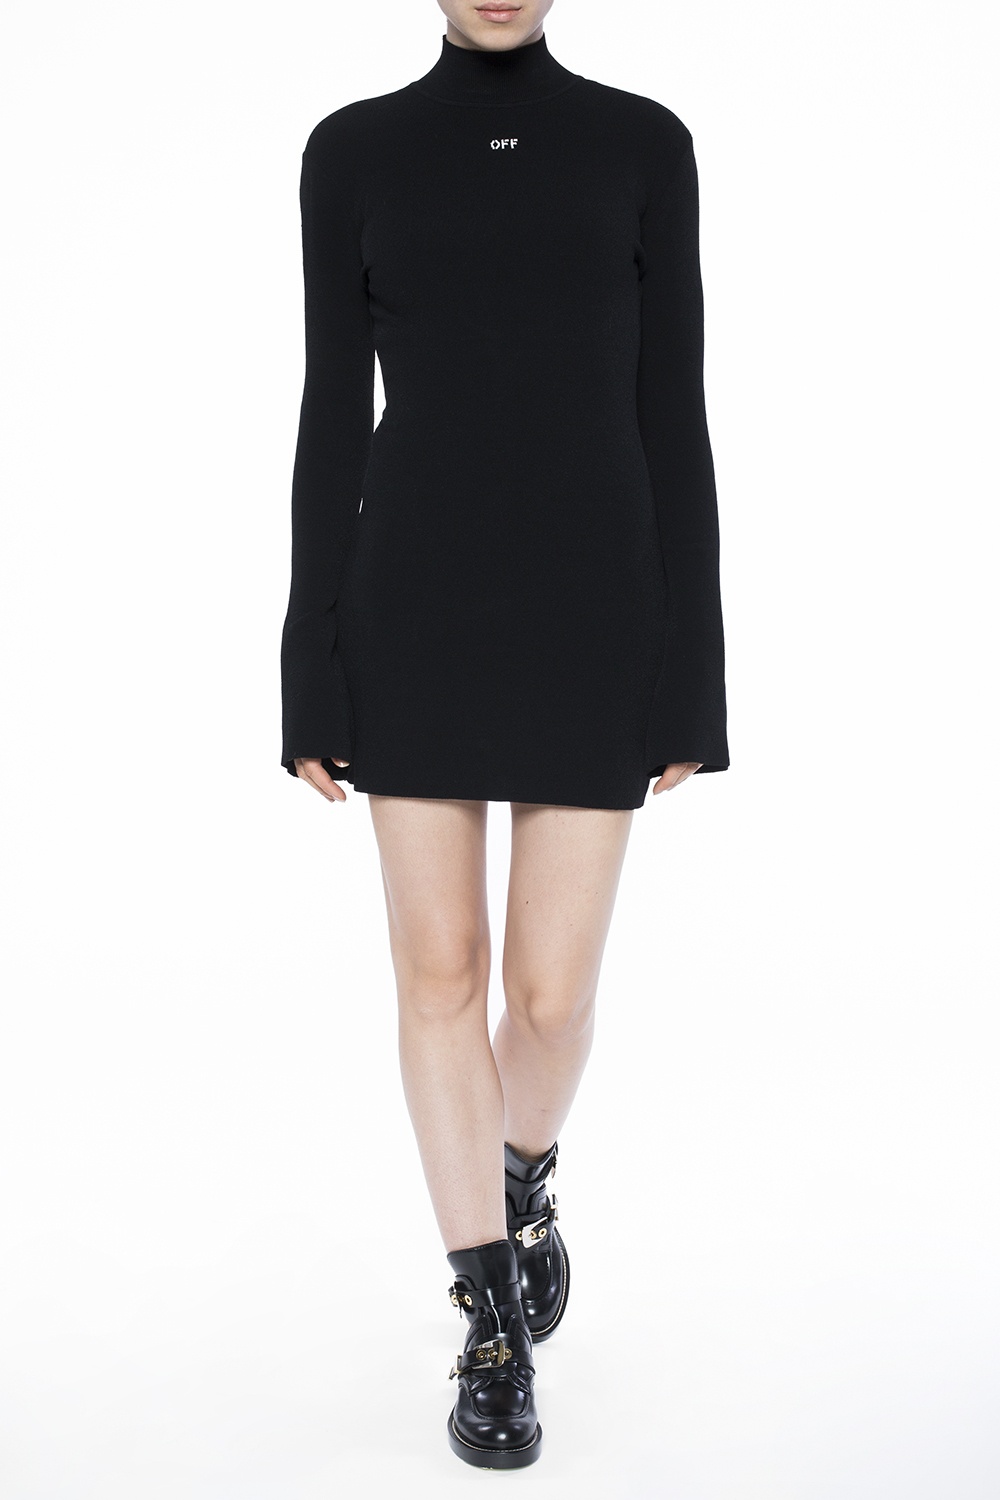 short black turtleneck dress